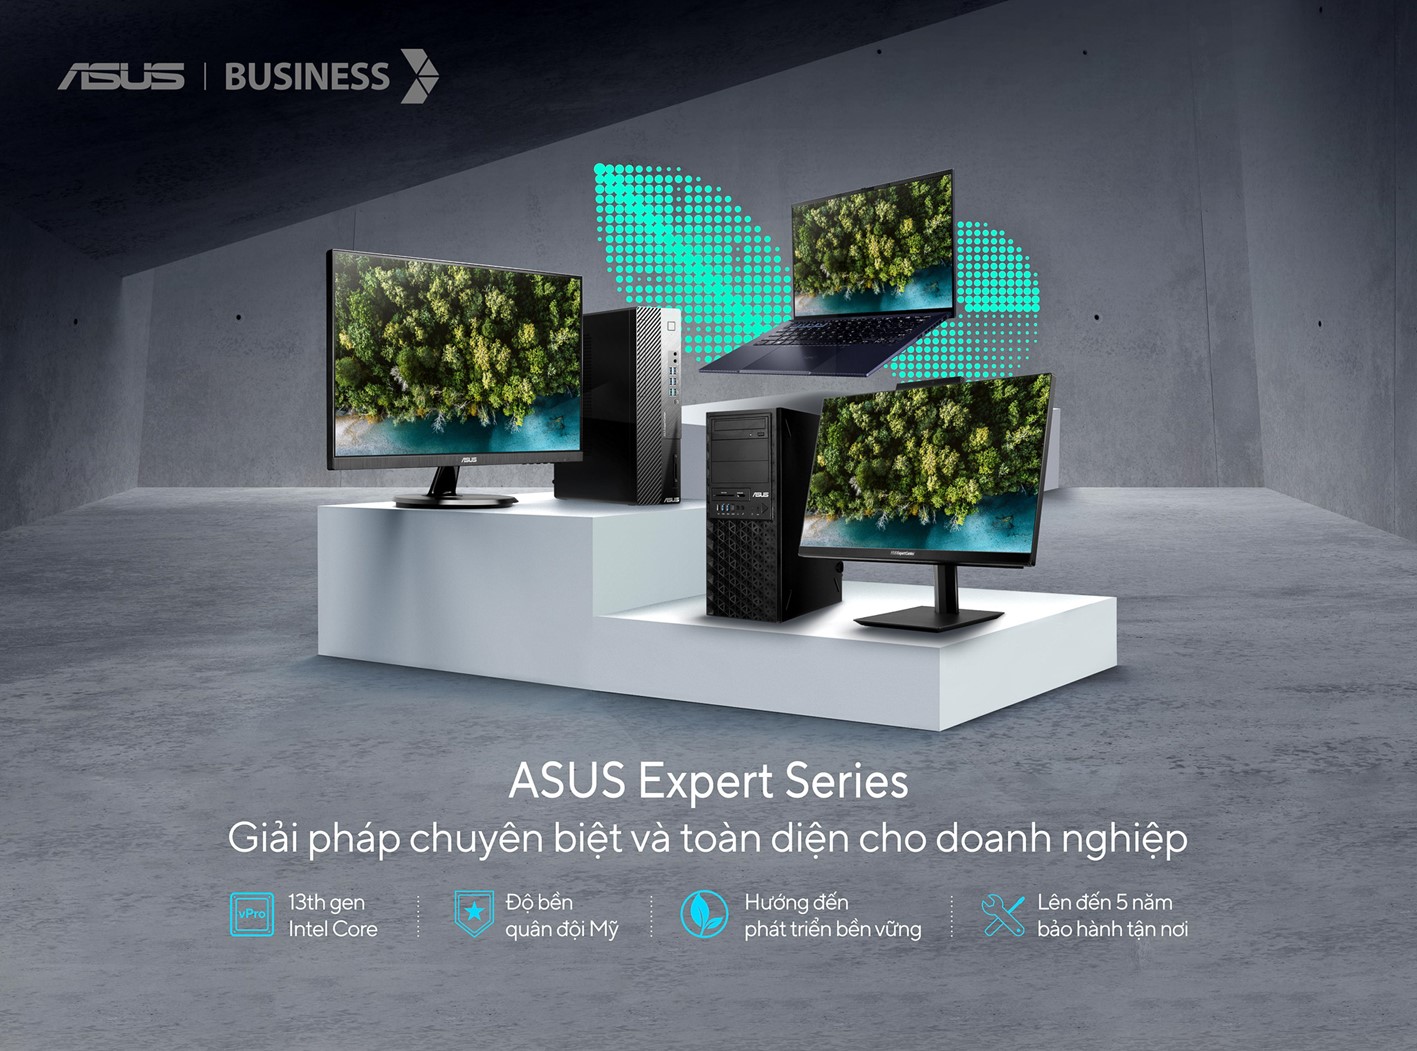 ASUS giới thiệu laptop OLED 14 inch siêu nhẹ cùng loạt máy tính Expert Series - khi doanh nhân hướng tới cuộc sống xanh - Ảnh 2.